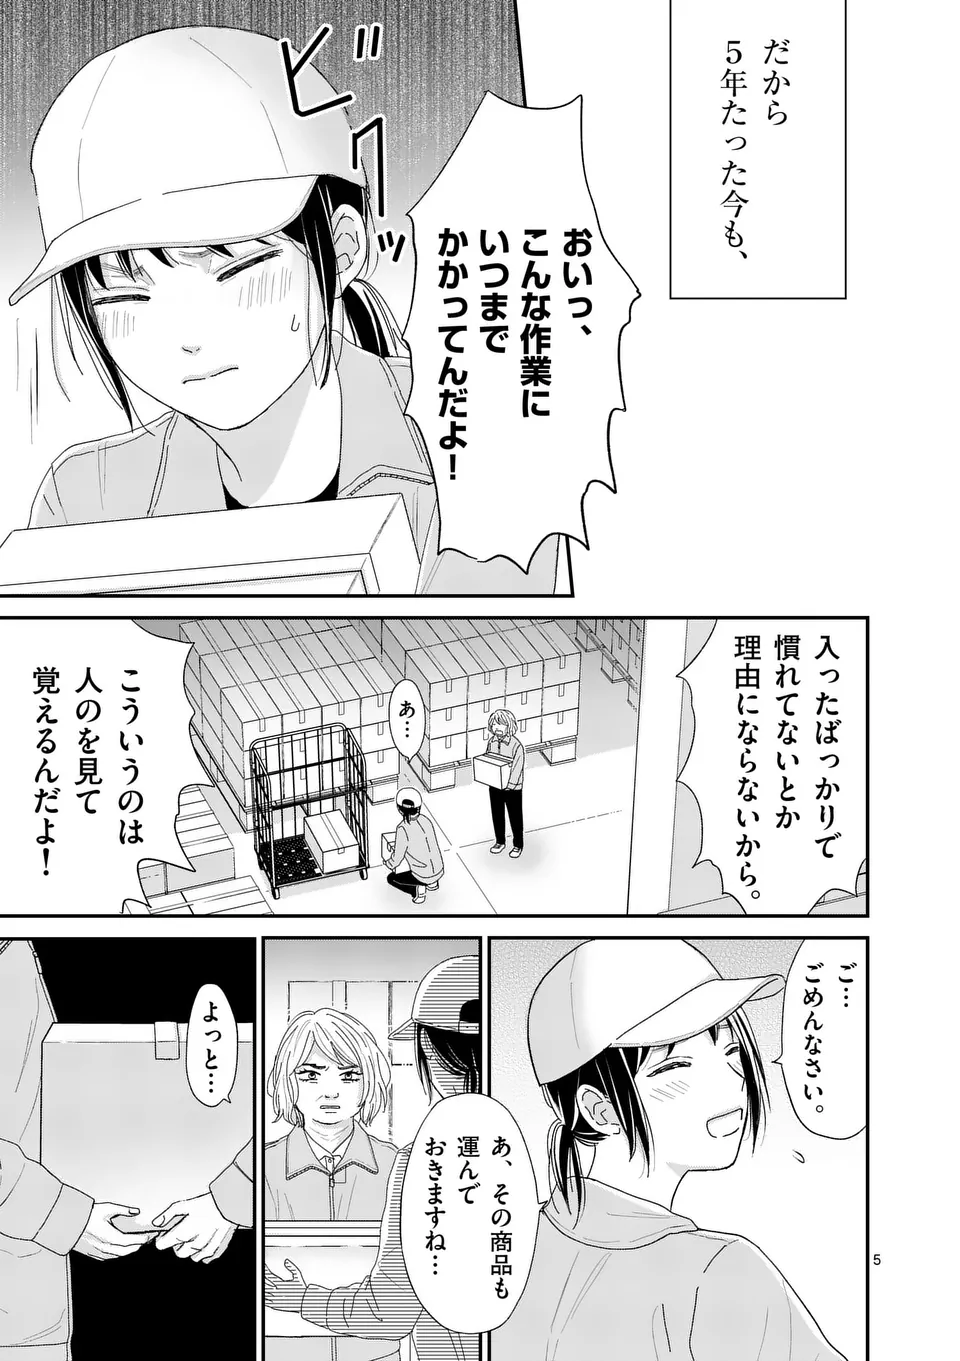 Atashi wo Ijimeta Kanojo no Ko - Chapter 1 - Page 5